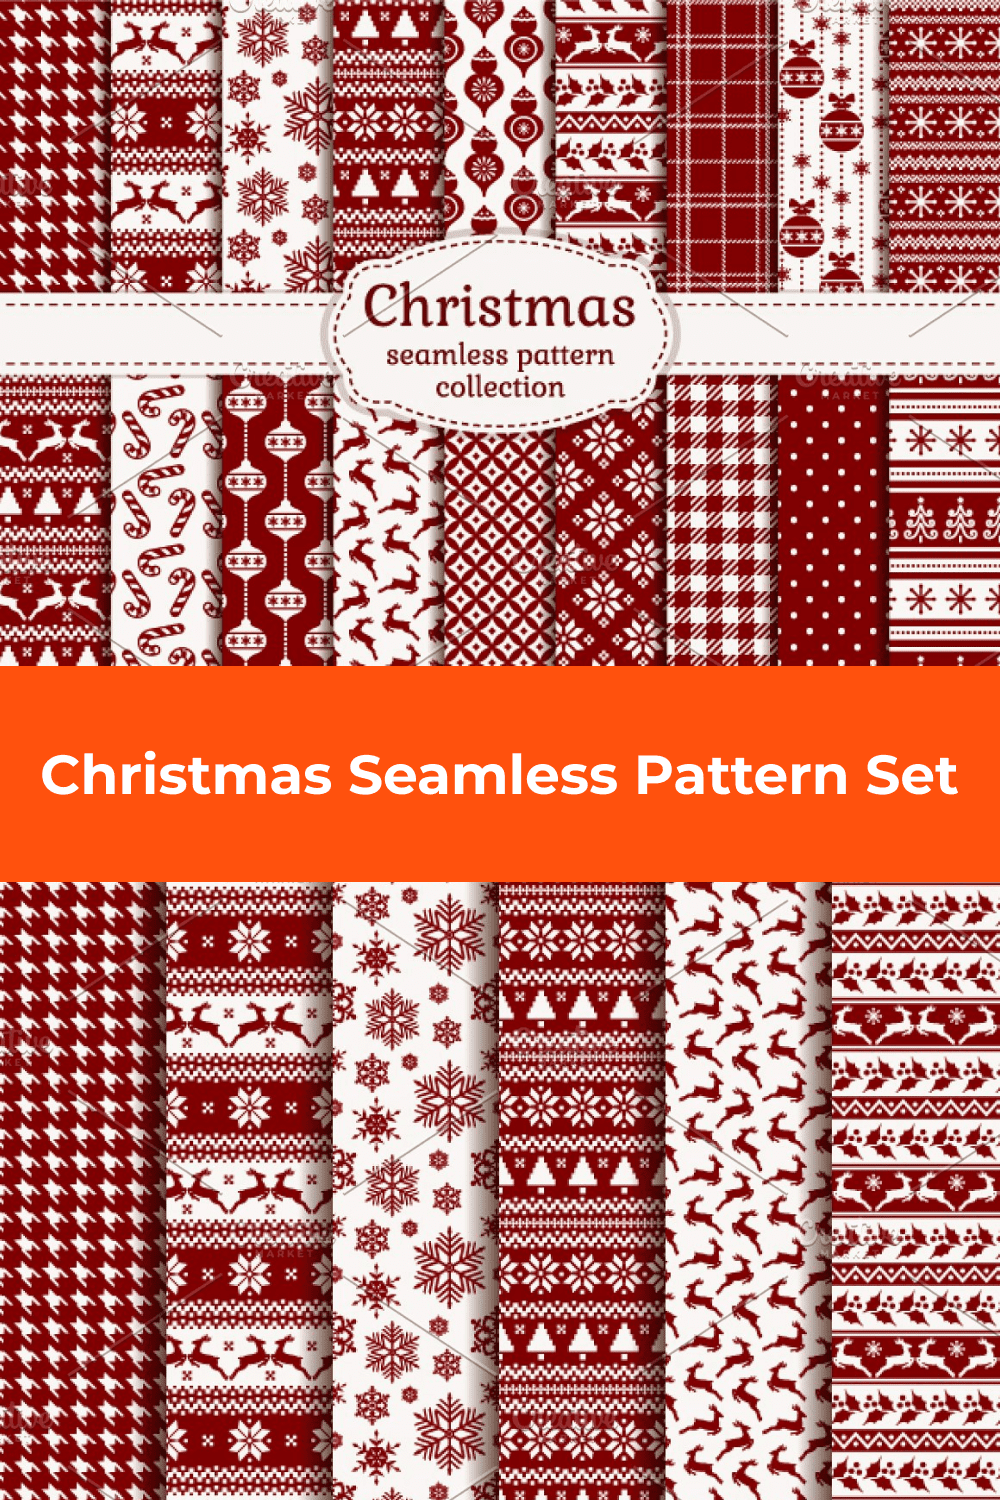 Christmas Seamless Pattern Set.